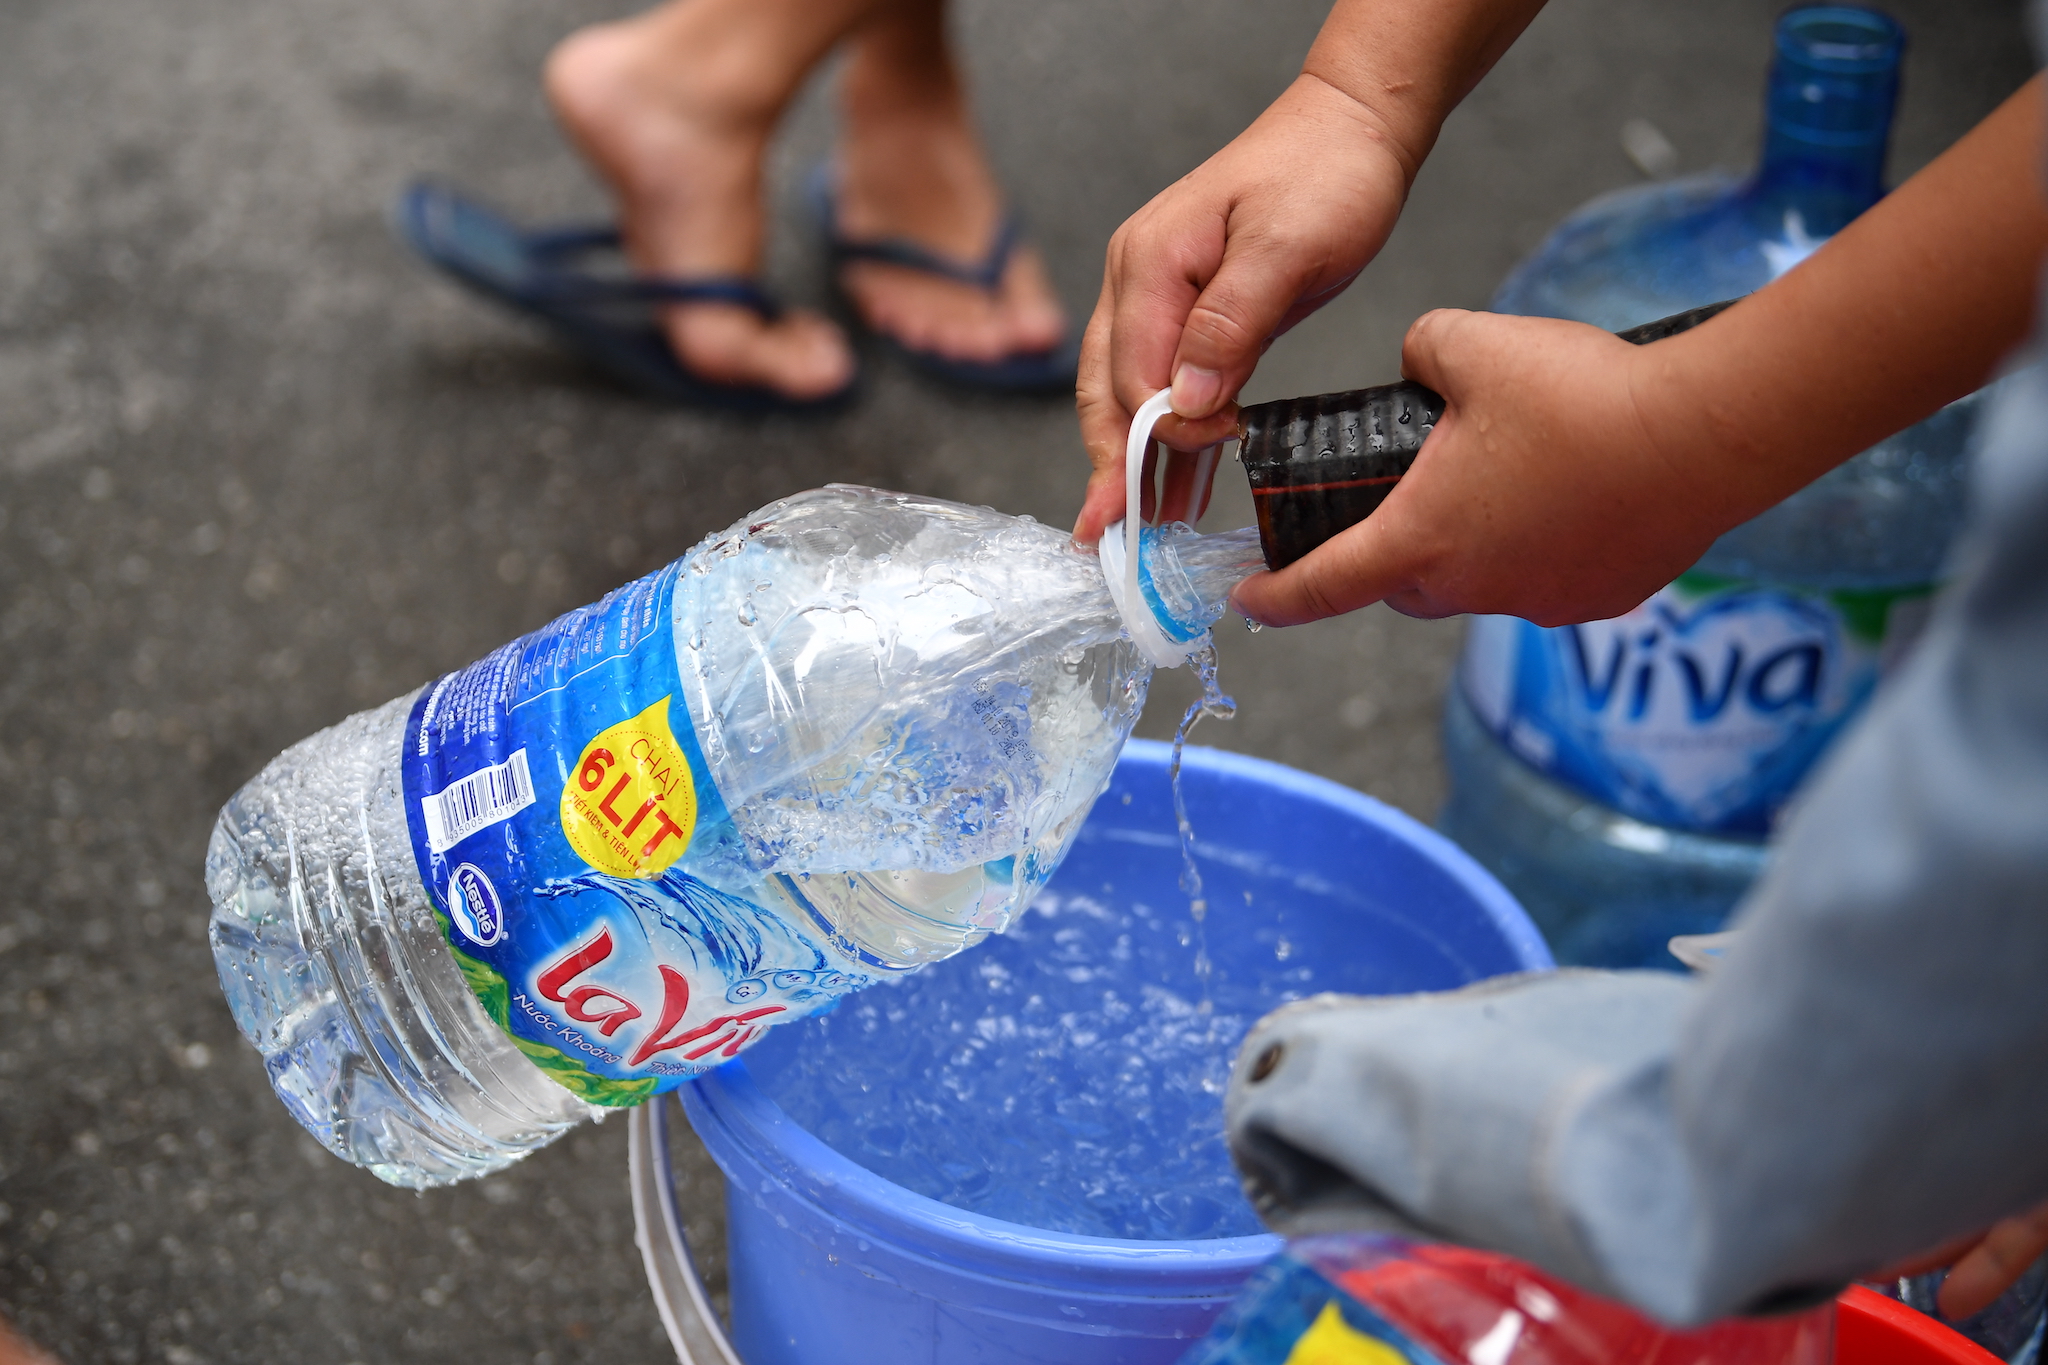 Mỗi ngày sẽ có một xe bồn chưa khoảng 7 khối nước sạch được đưa đến để phục vụ người dân tại khu đô thị Linh Đàm.